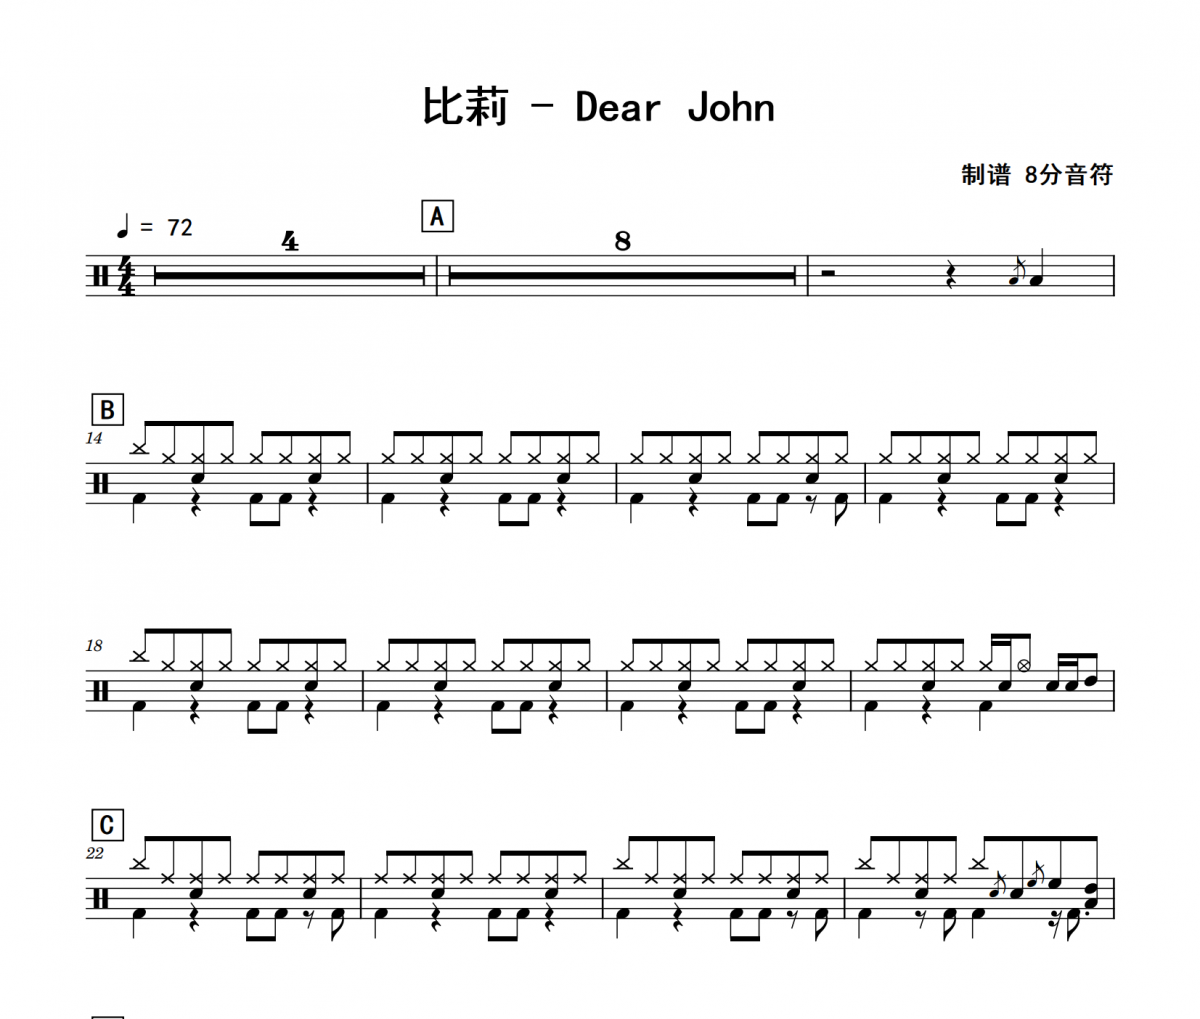 比莉《Dear John》架子鼓|爵士鼓|鼓谱 8分音符制谱